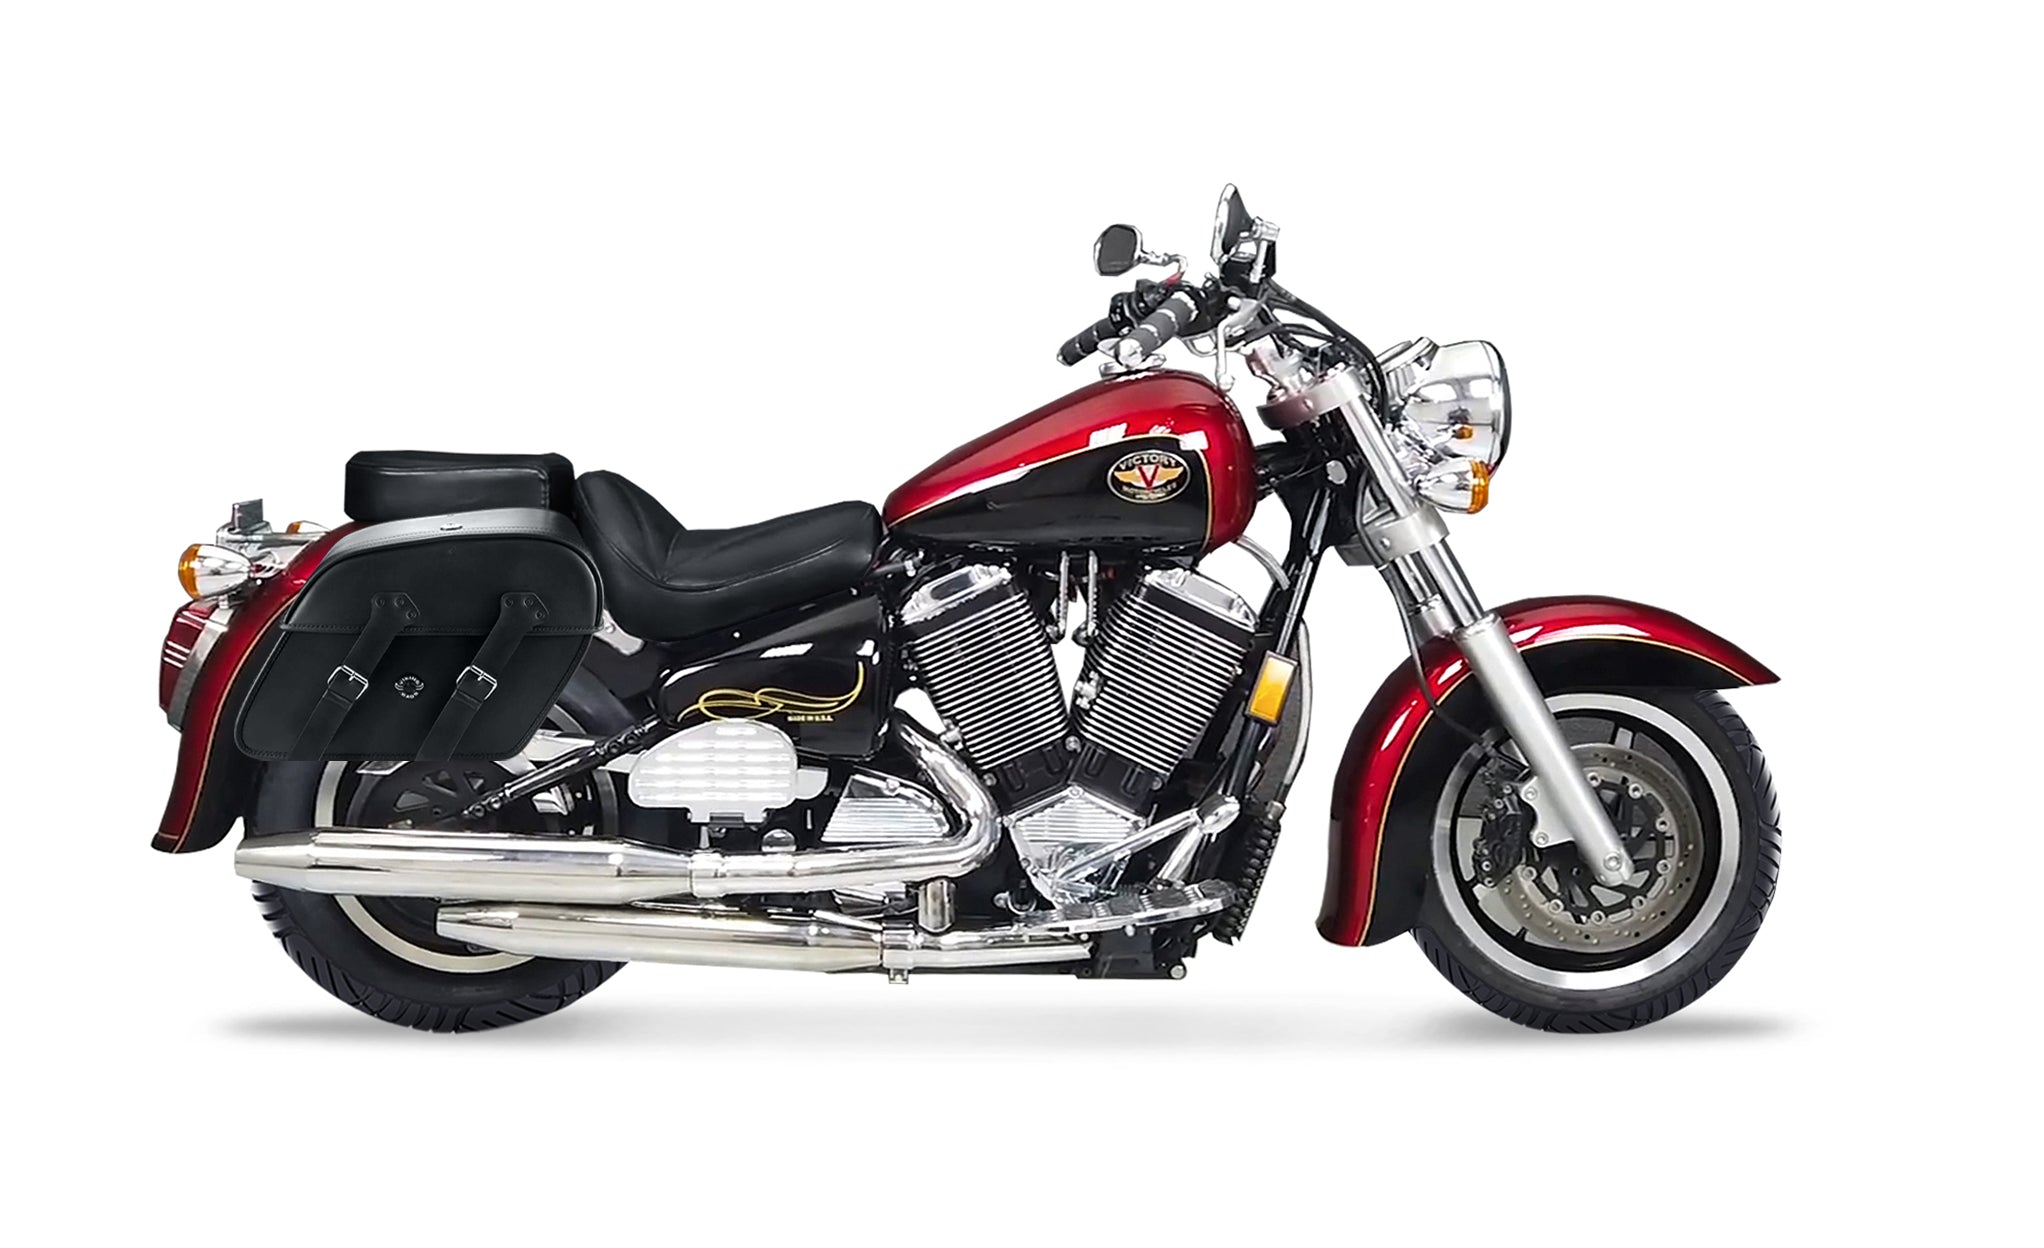 Viking Raven Large Victory V92C Motorcycle Leather Saddlebags on Bike Photo @expand